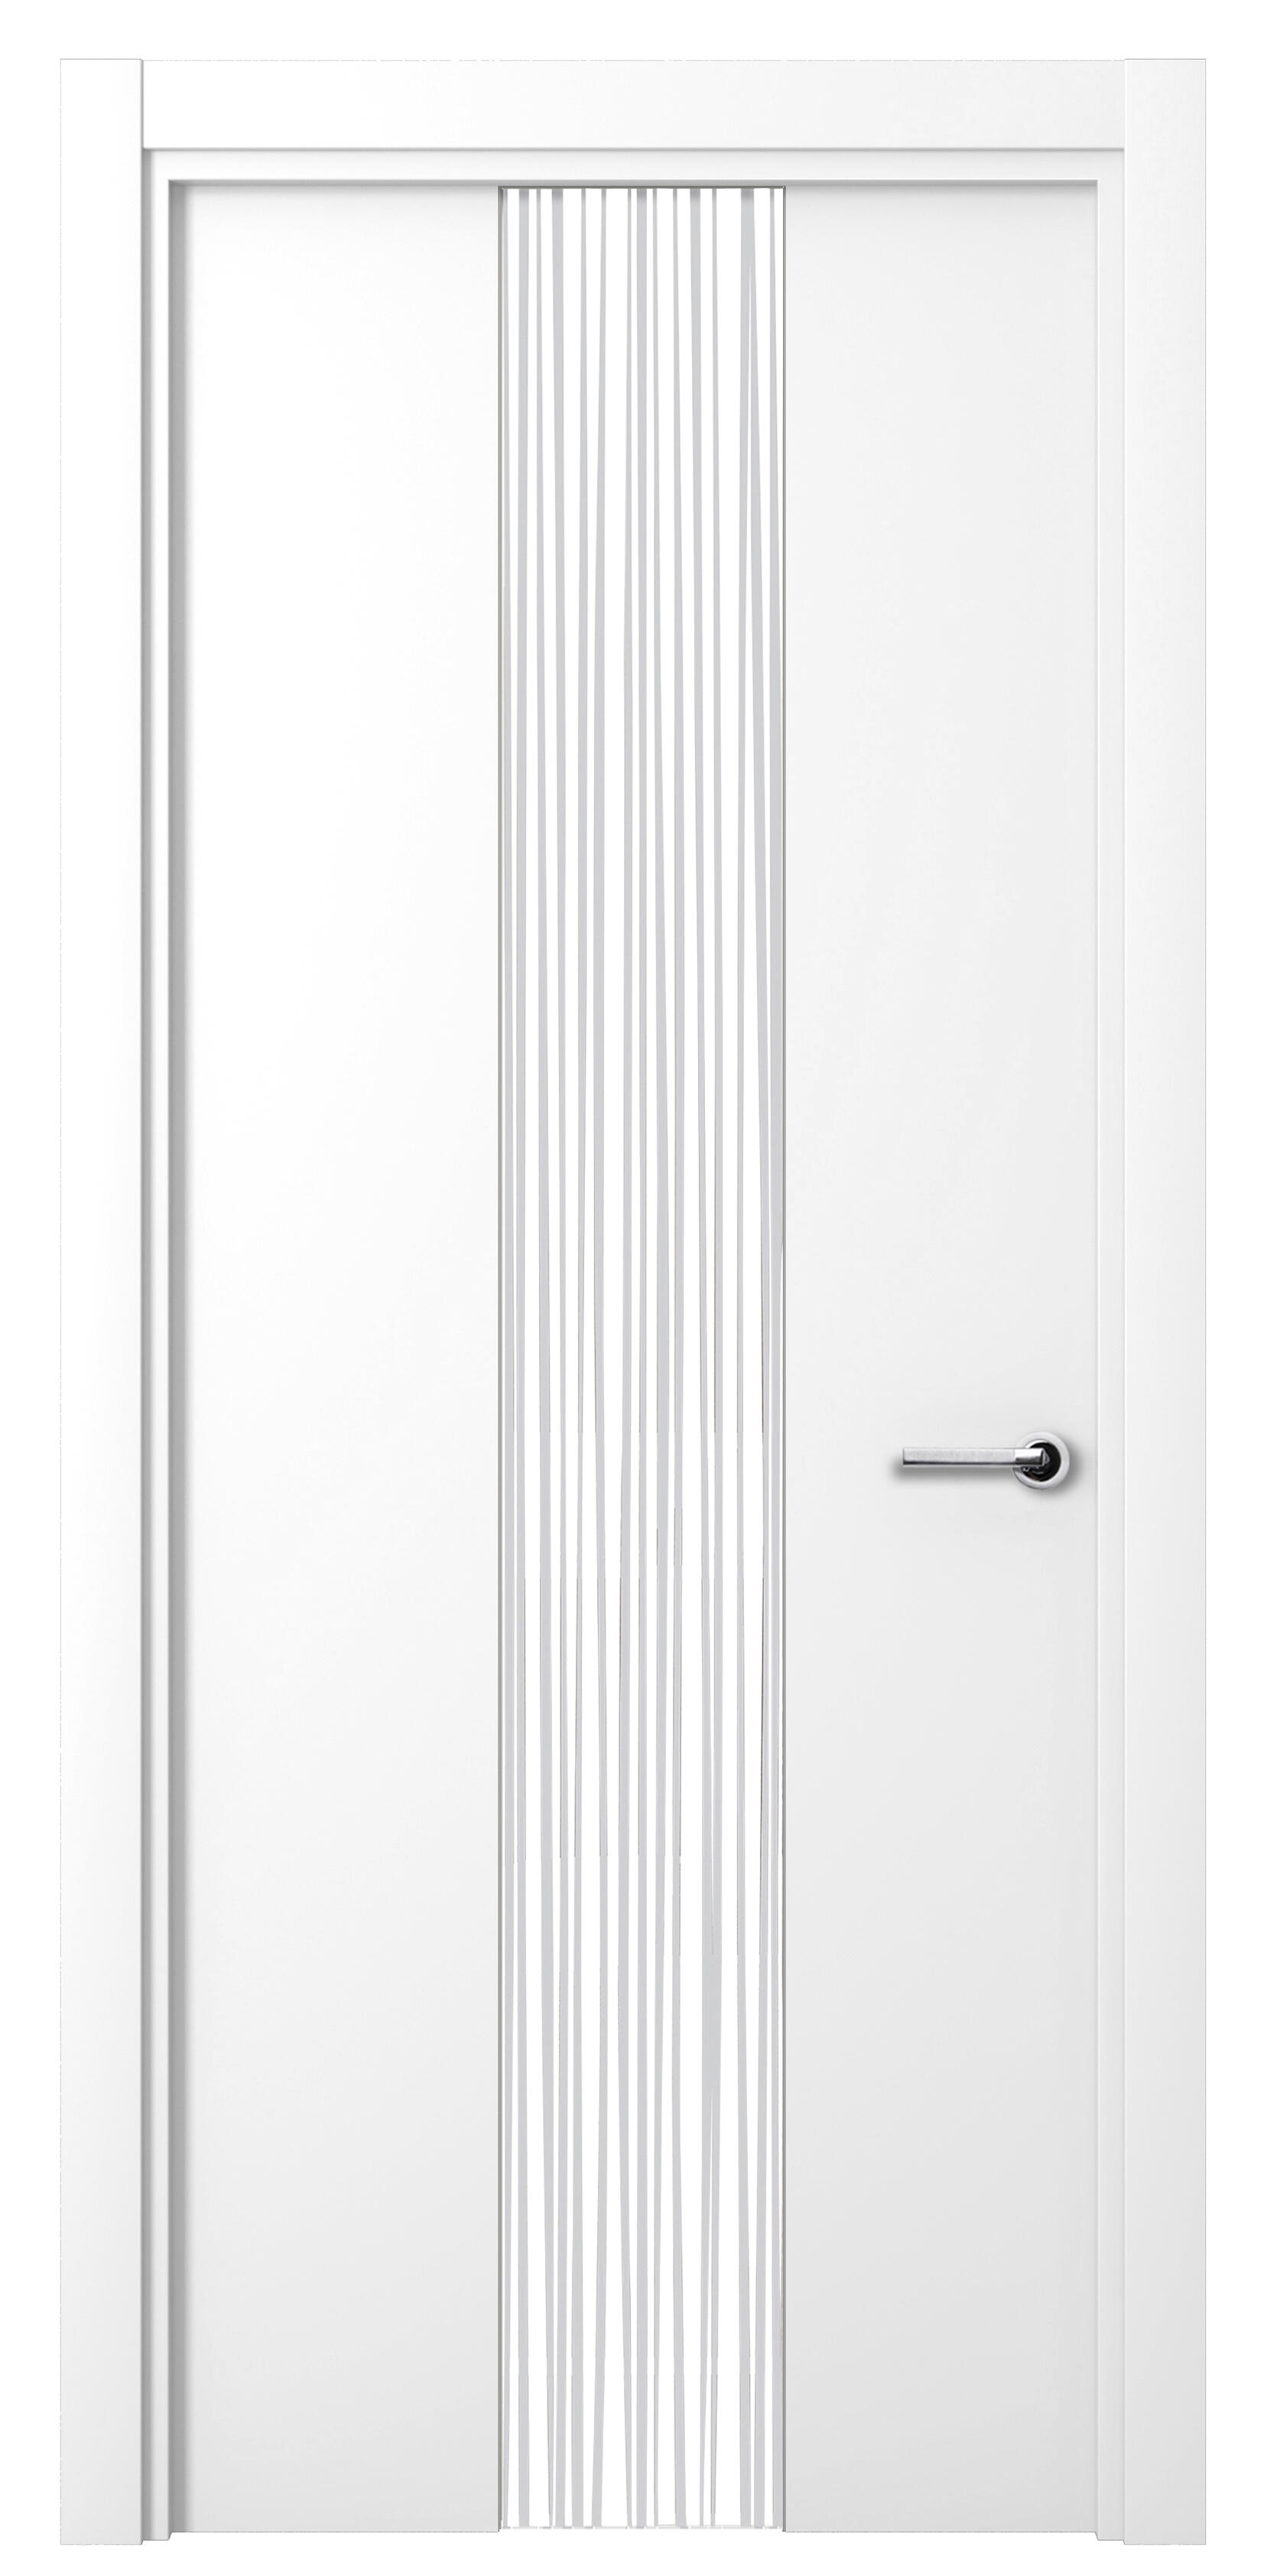 Puerta abatible quevedo blanca premium con cristal blanco izquierda de 62.5